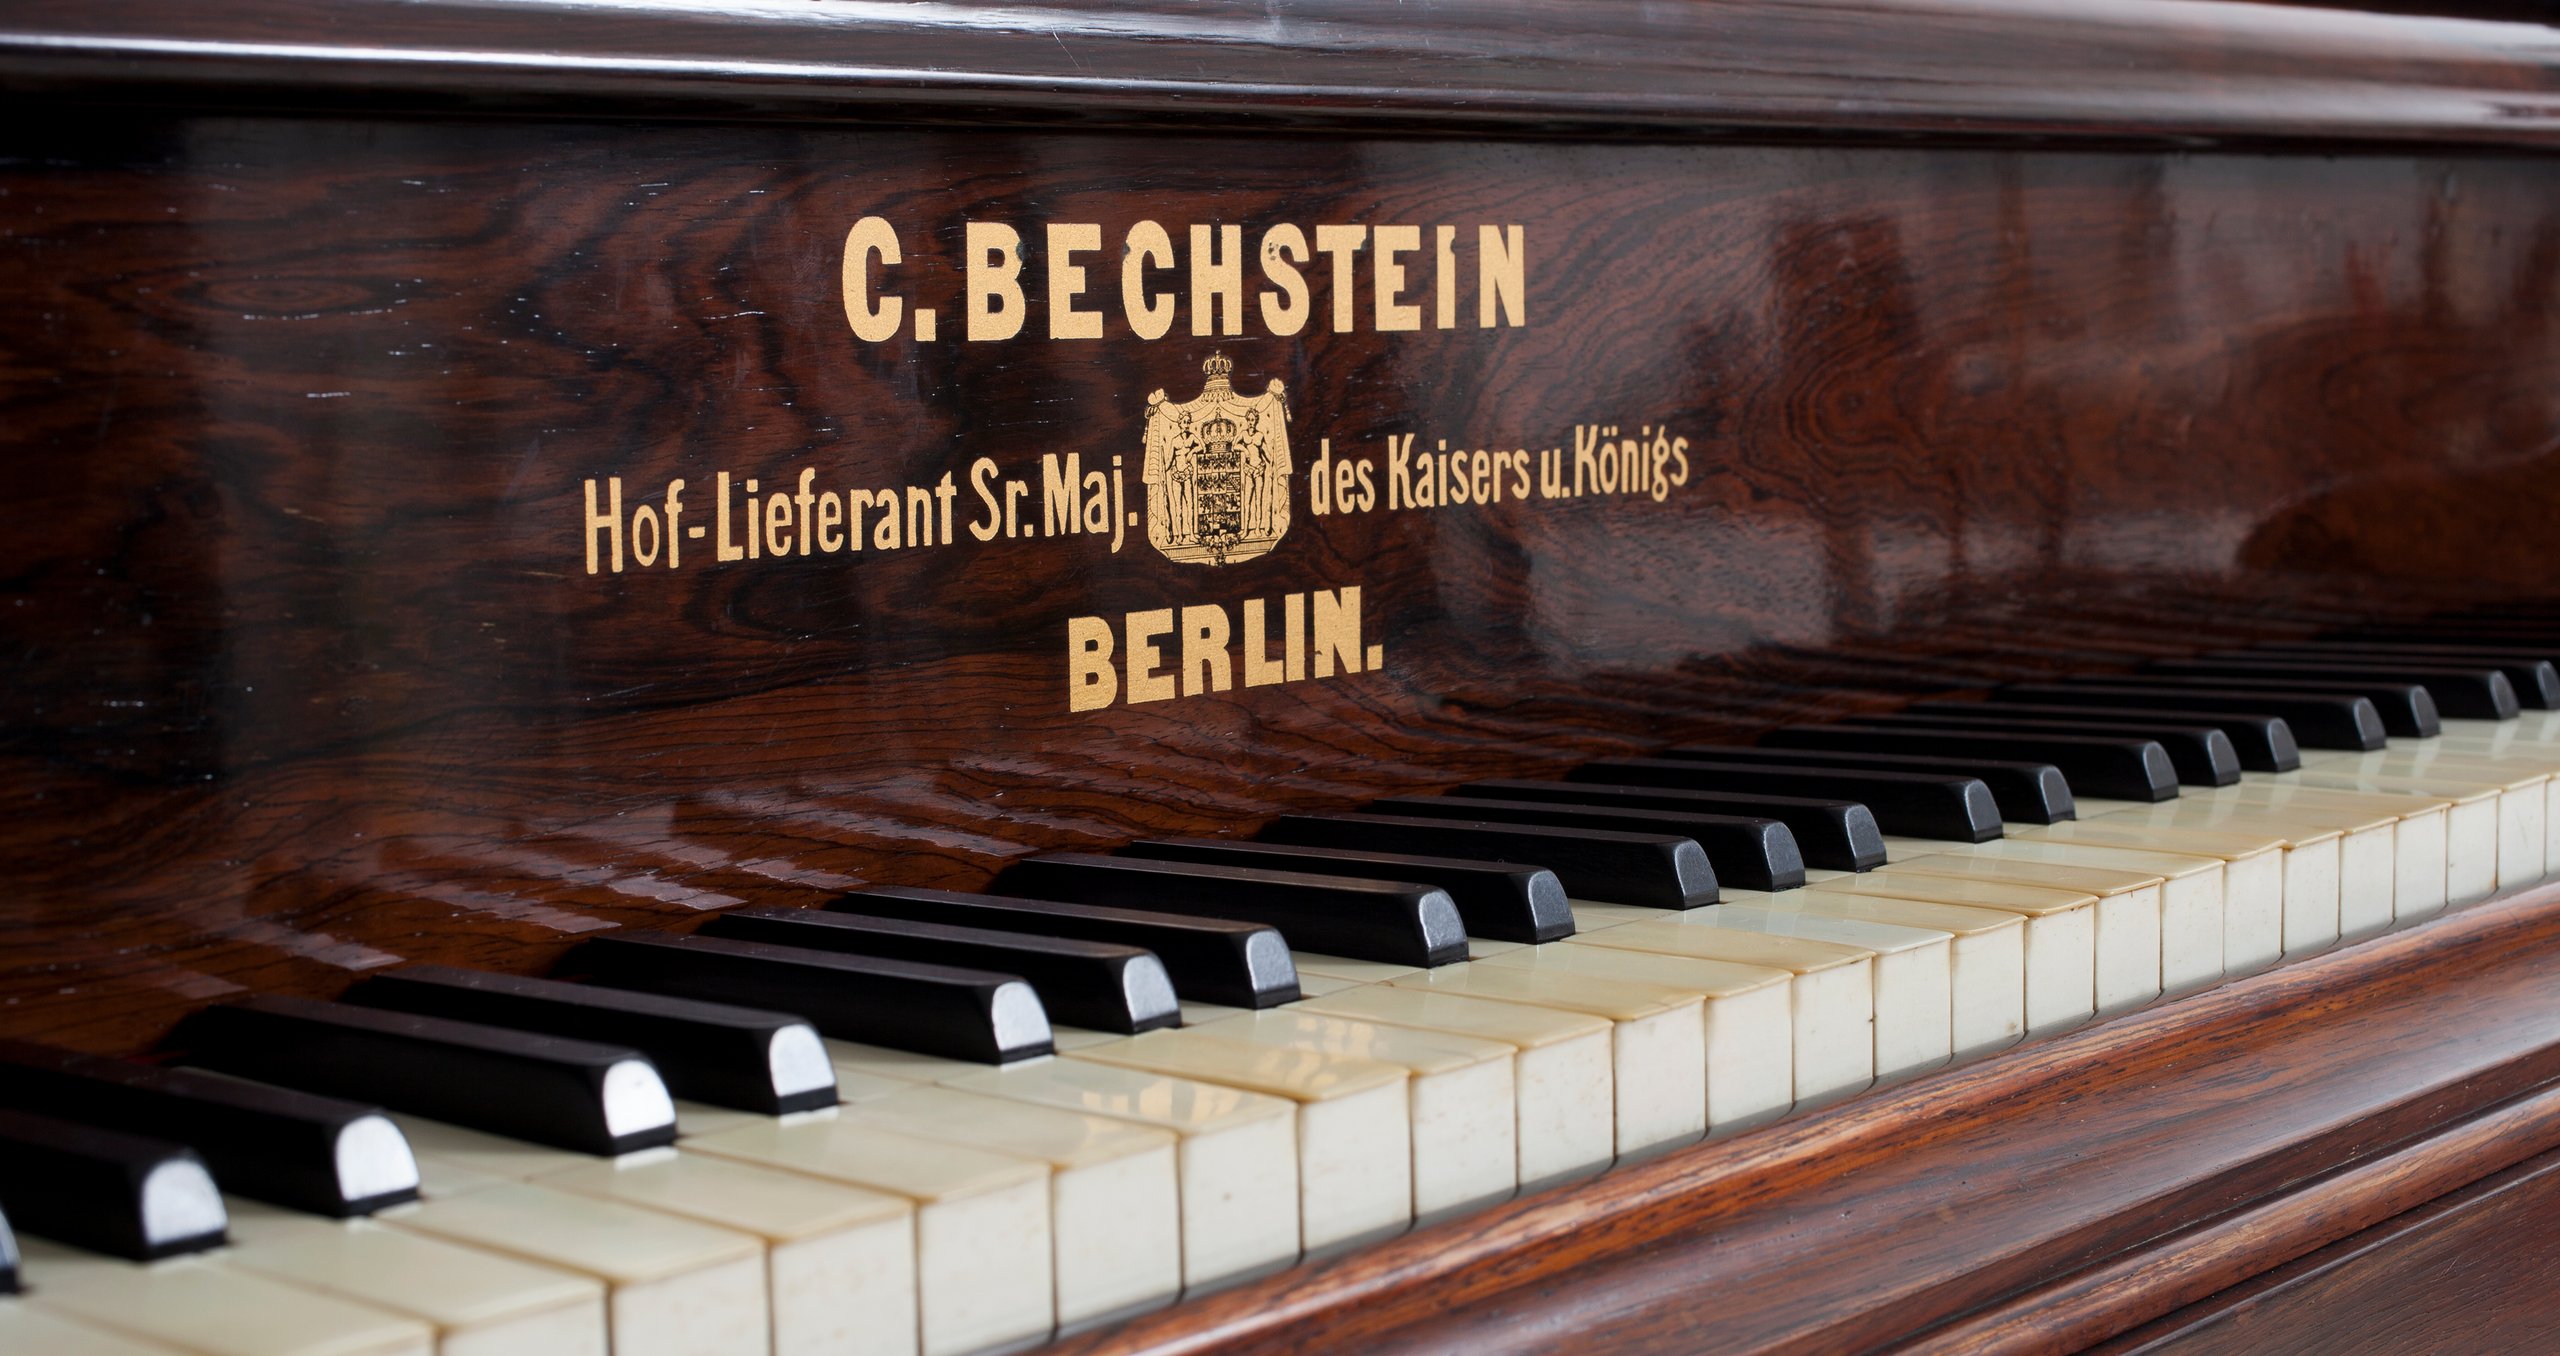 Bechstein piano exhibited in the 1879 Sydney International Exhibition